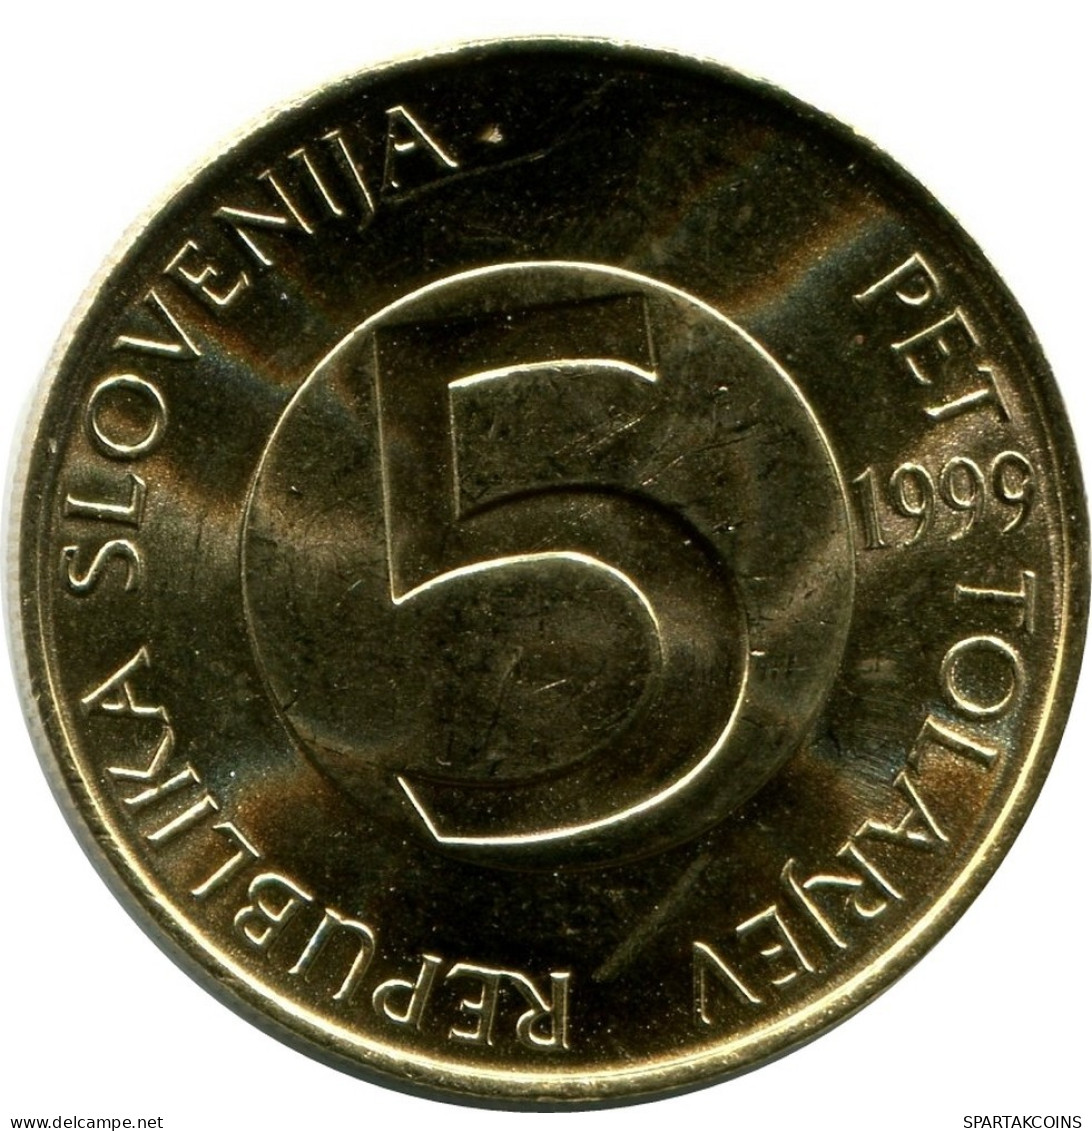 5 TOLAR 1999 ESLOVENIA SLOVENIA UNC Head Capricorn Moneda #M10216.E.A - Slovénie